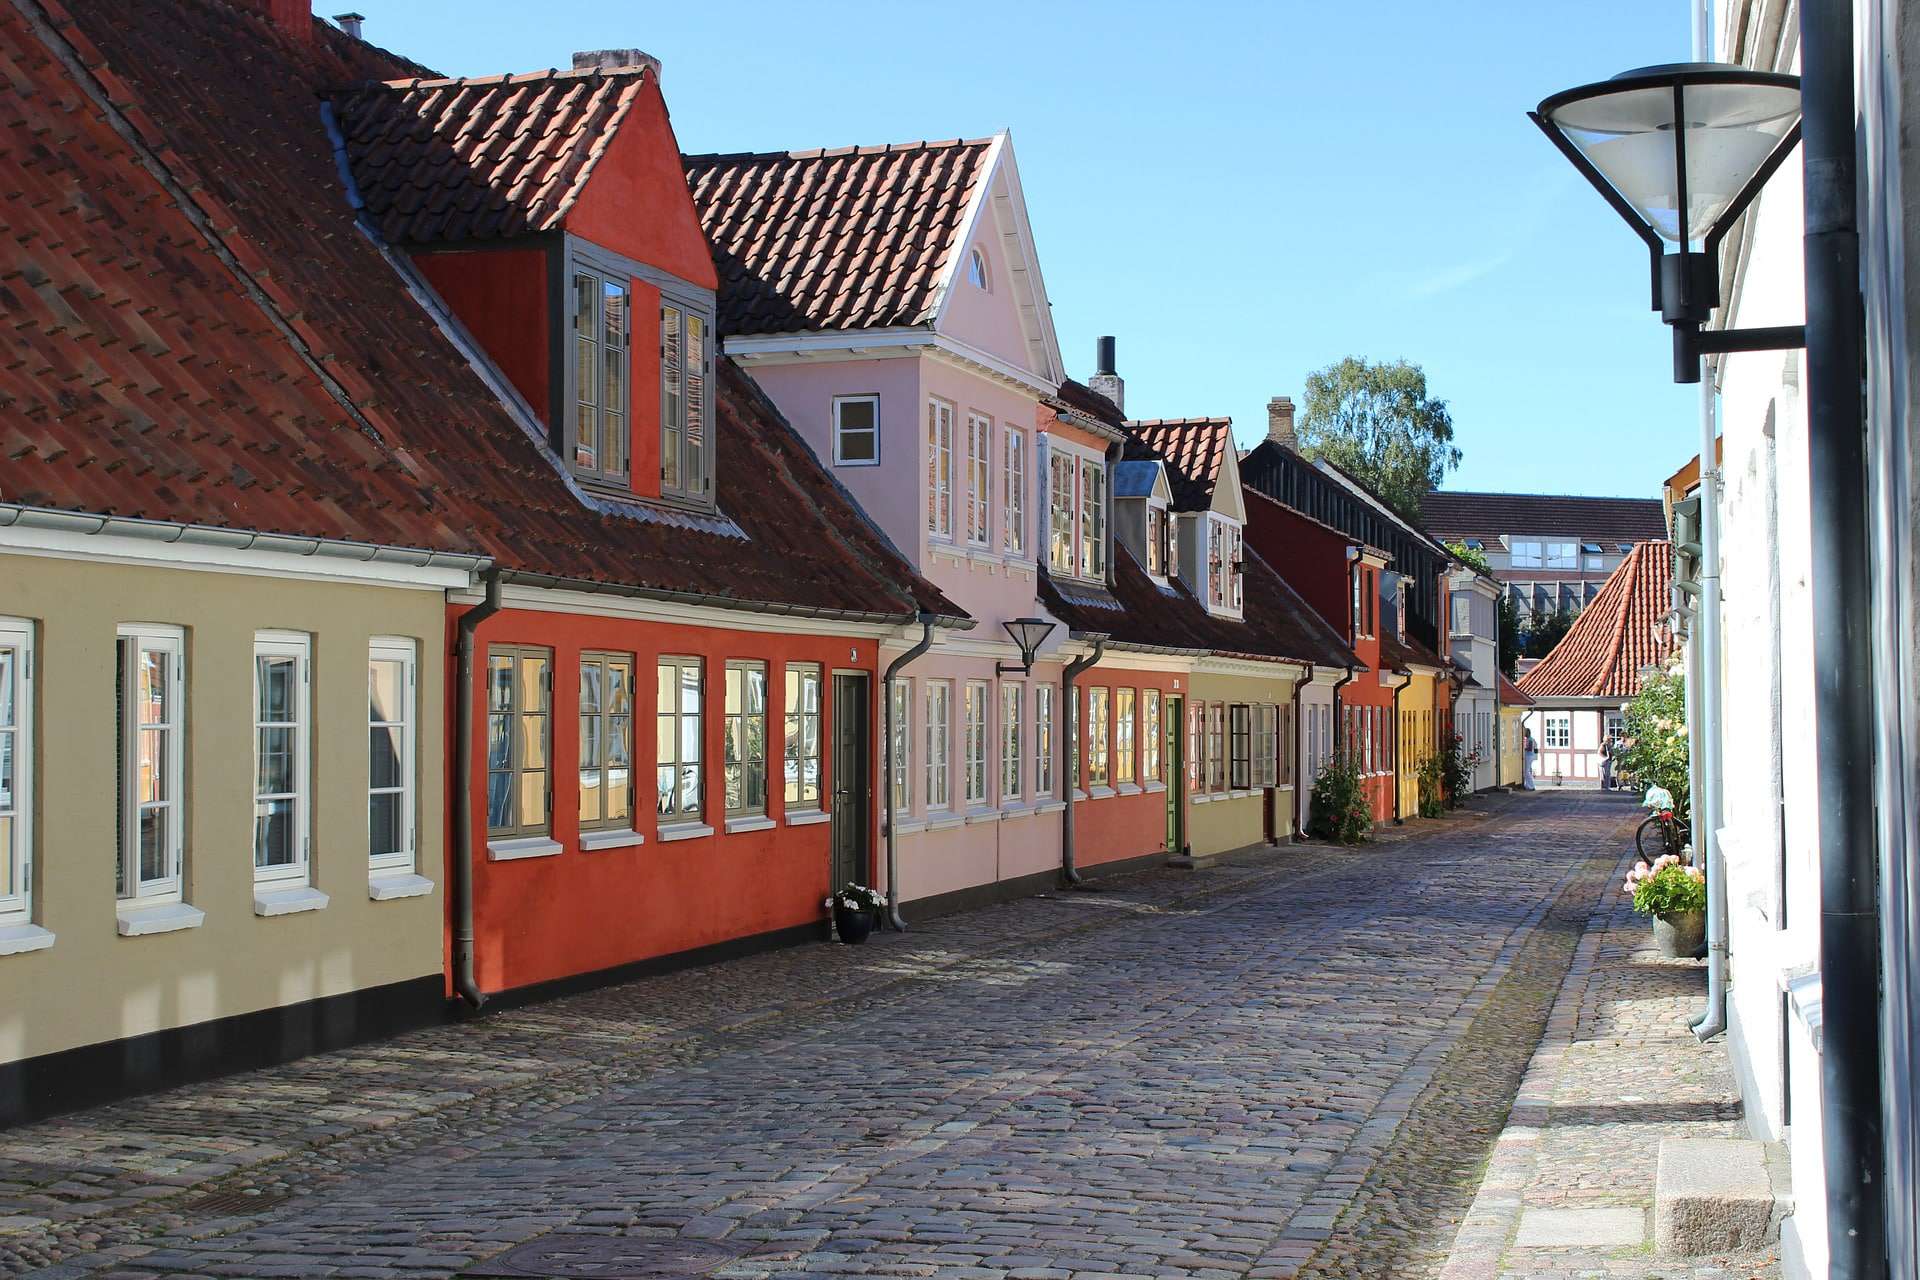 Odense i Danmark